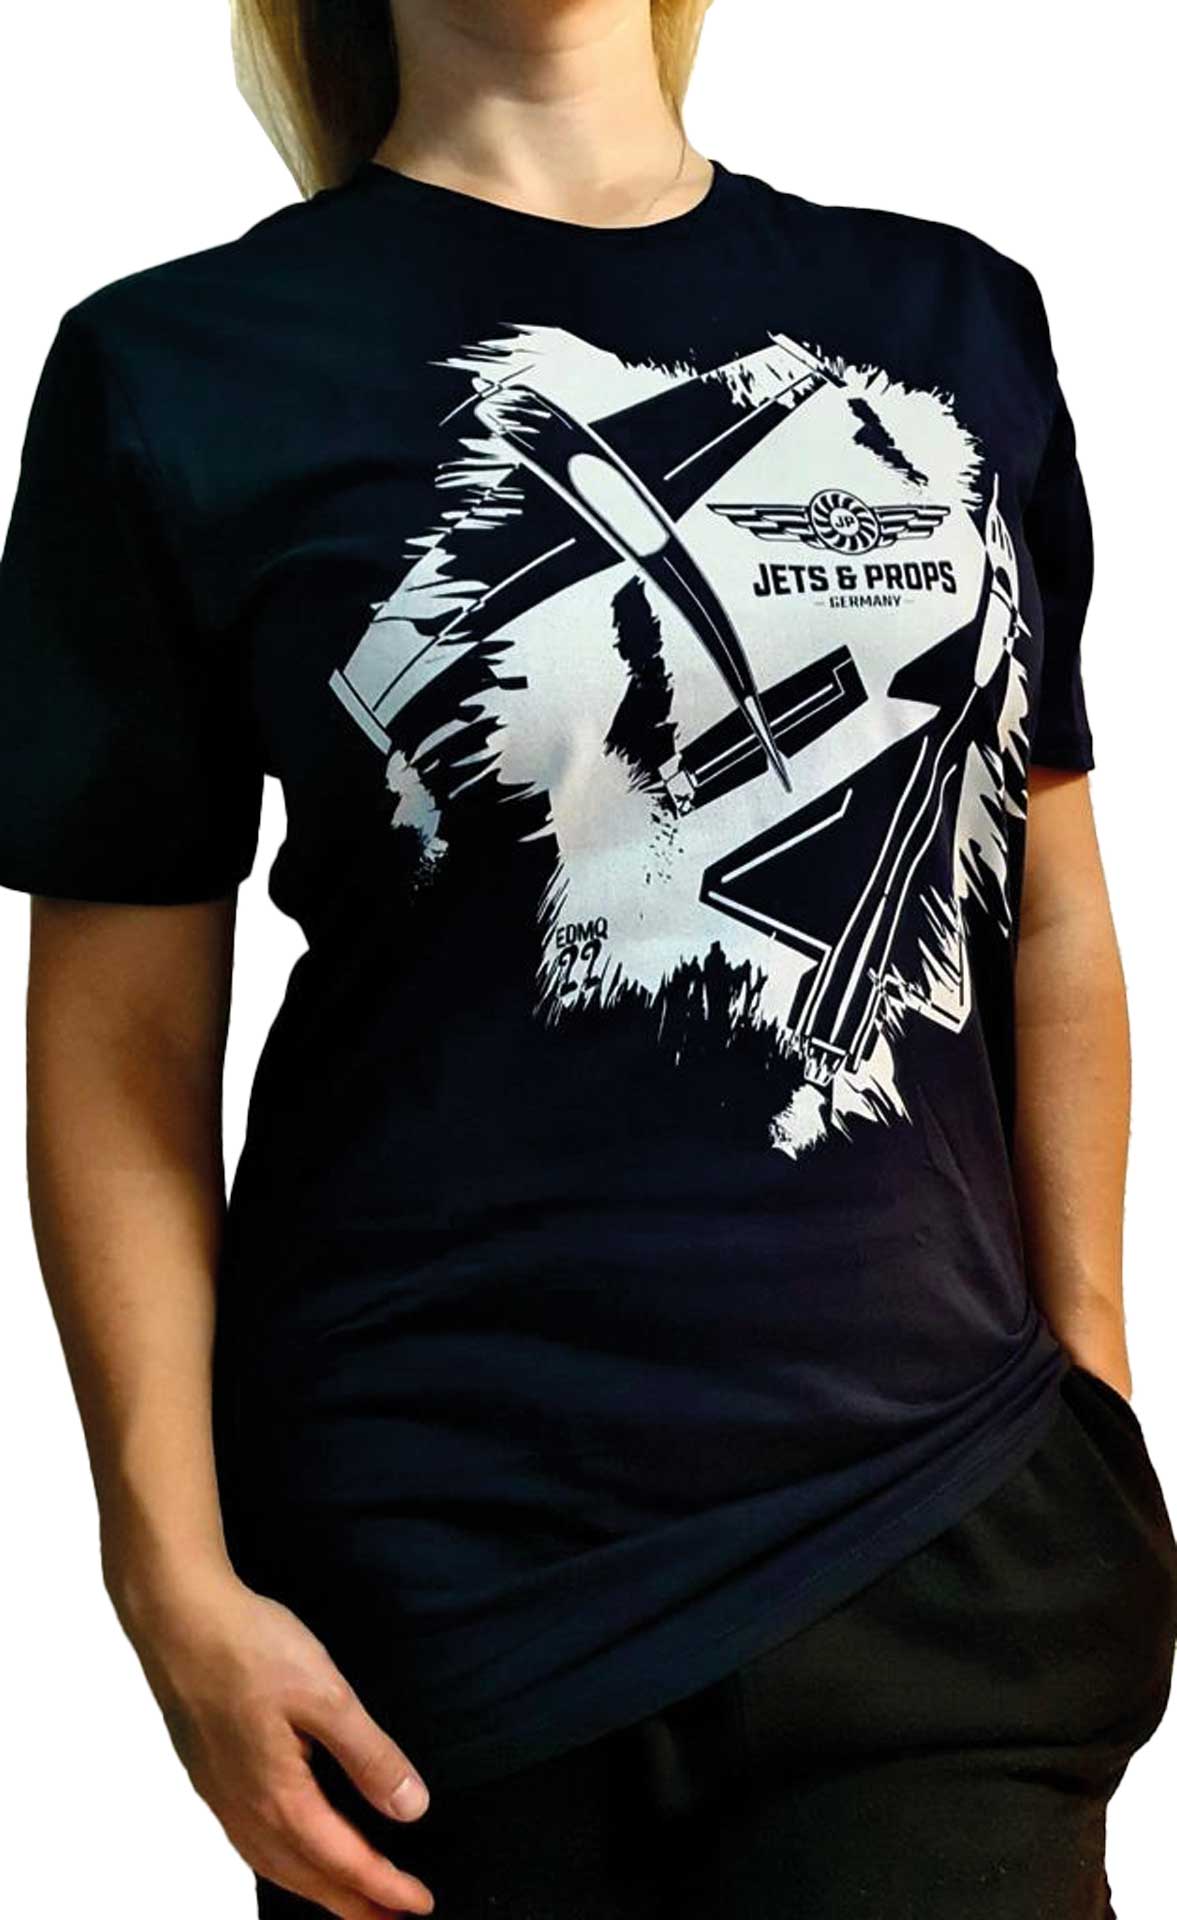 DIVERSE T-Shirt "XXXL" Jets & Props grunge big 400, Premium, Navy, Digitaldirektdruck